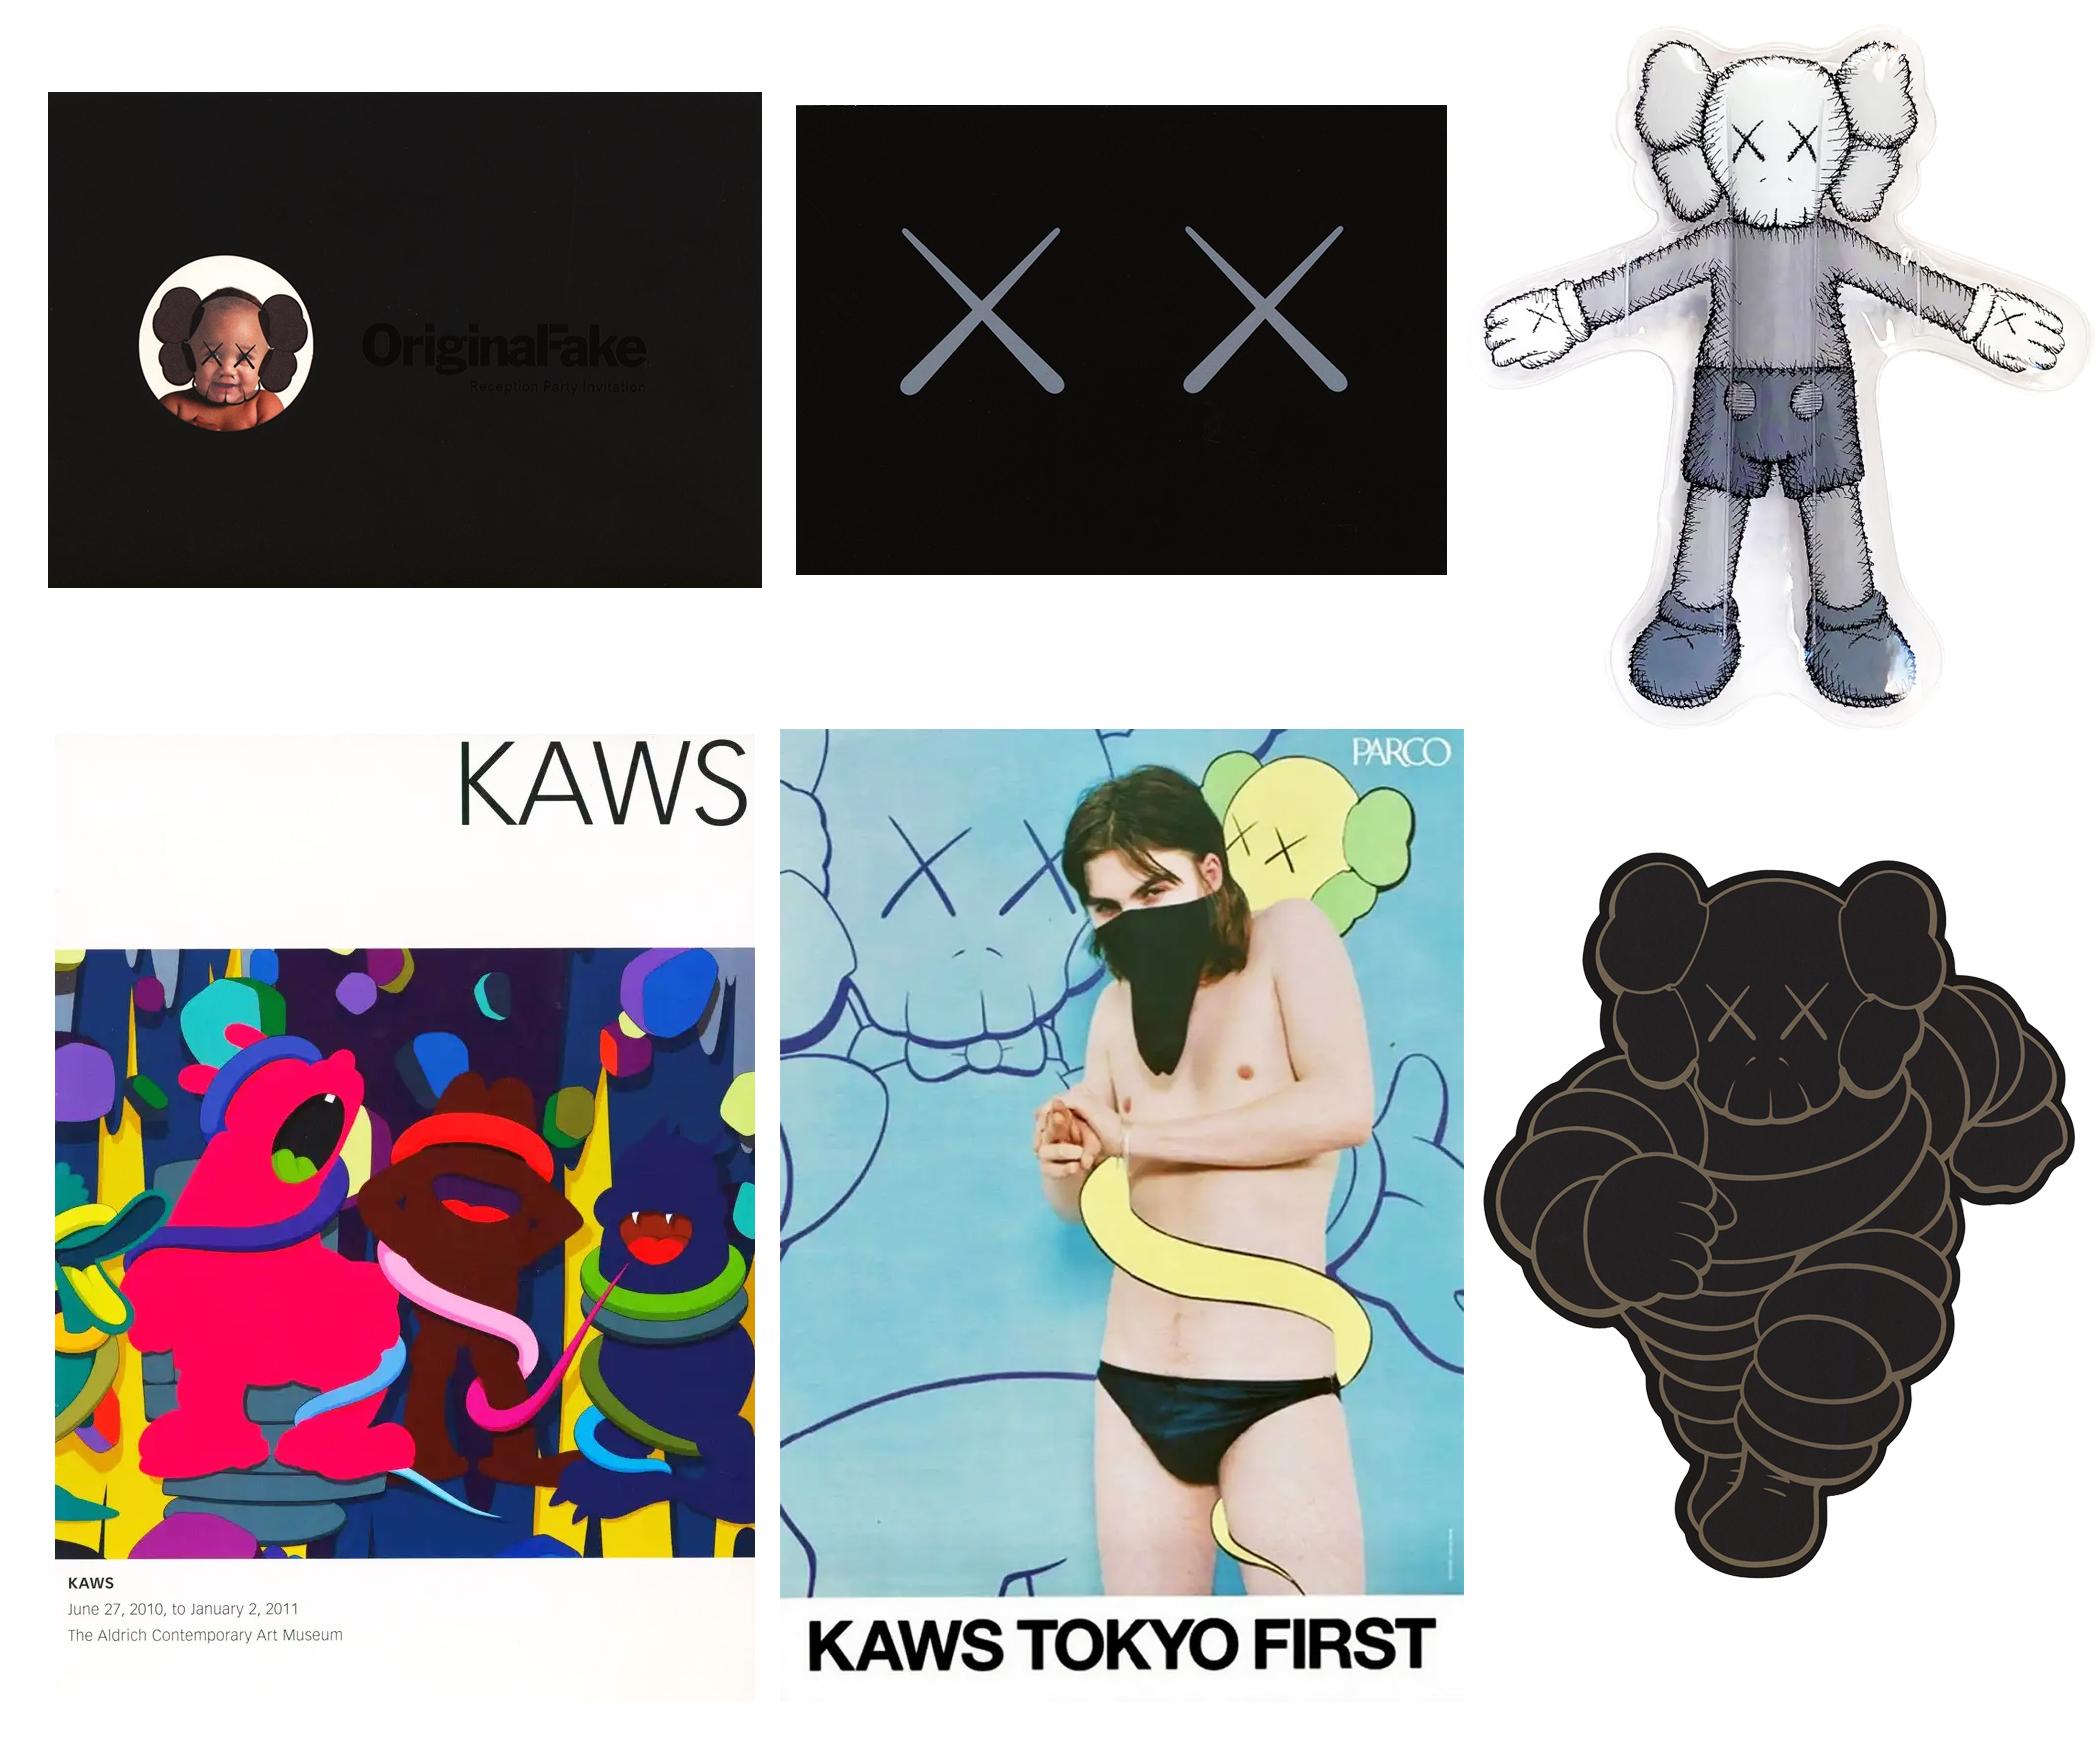 KAWS 2001-2019 collection de 6 announcements de galeries 1